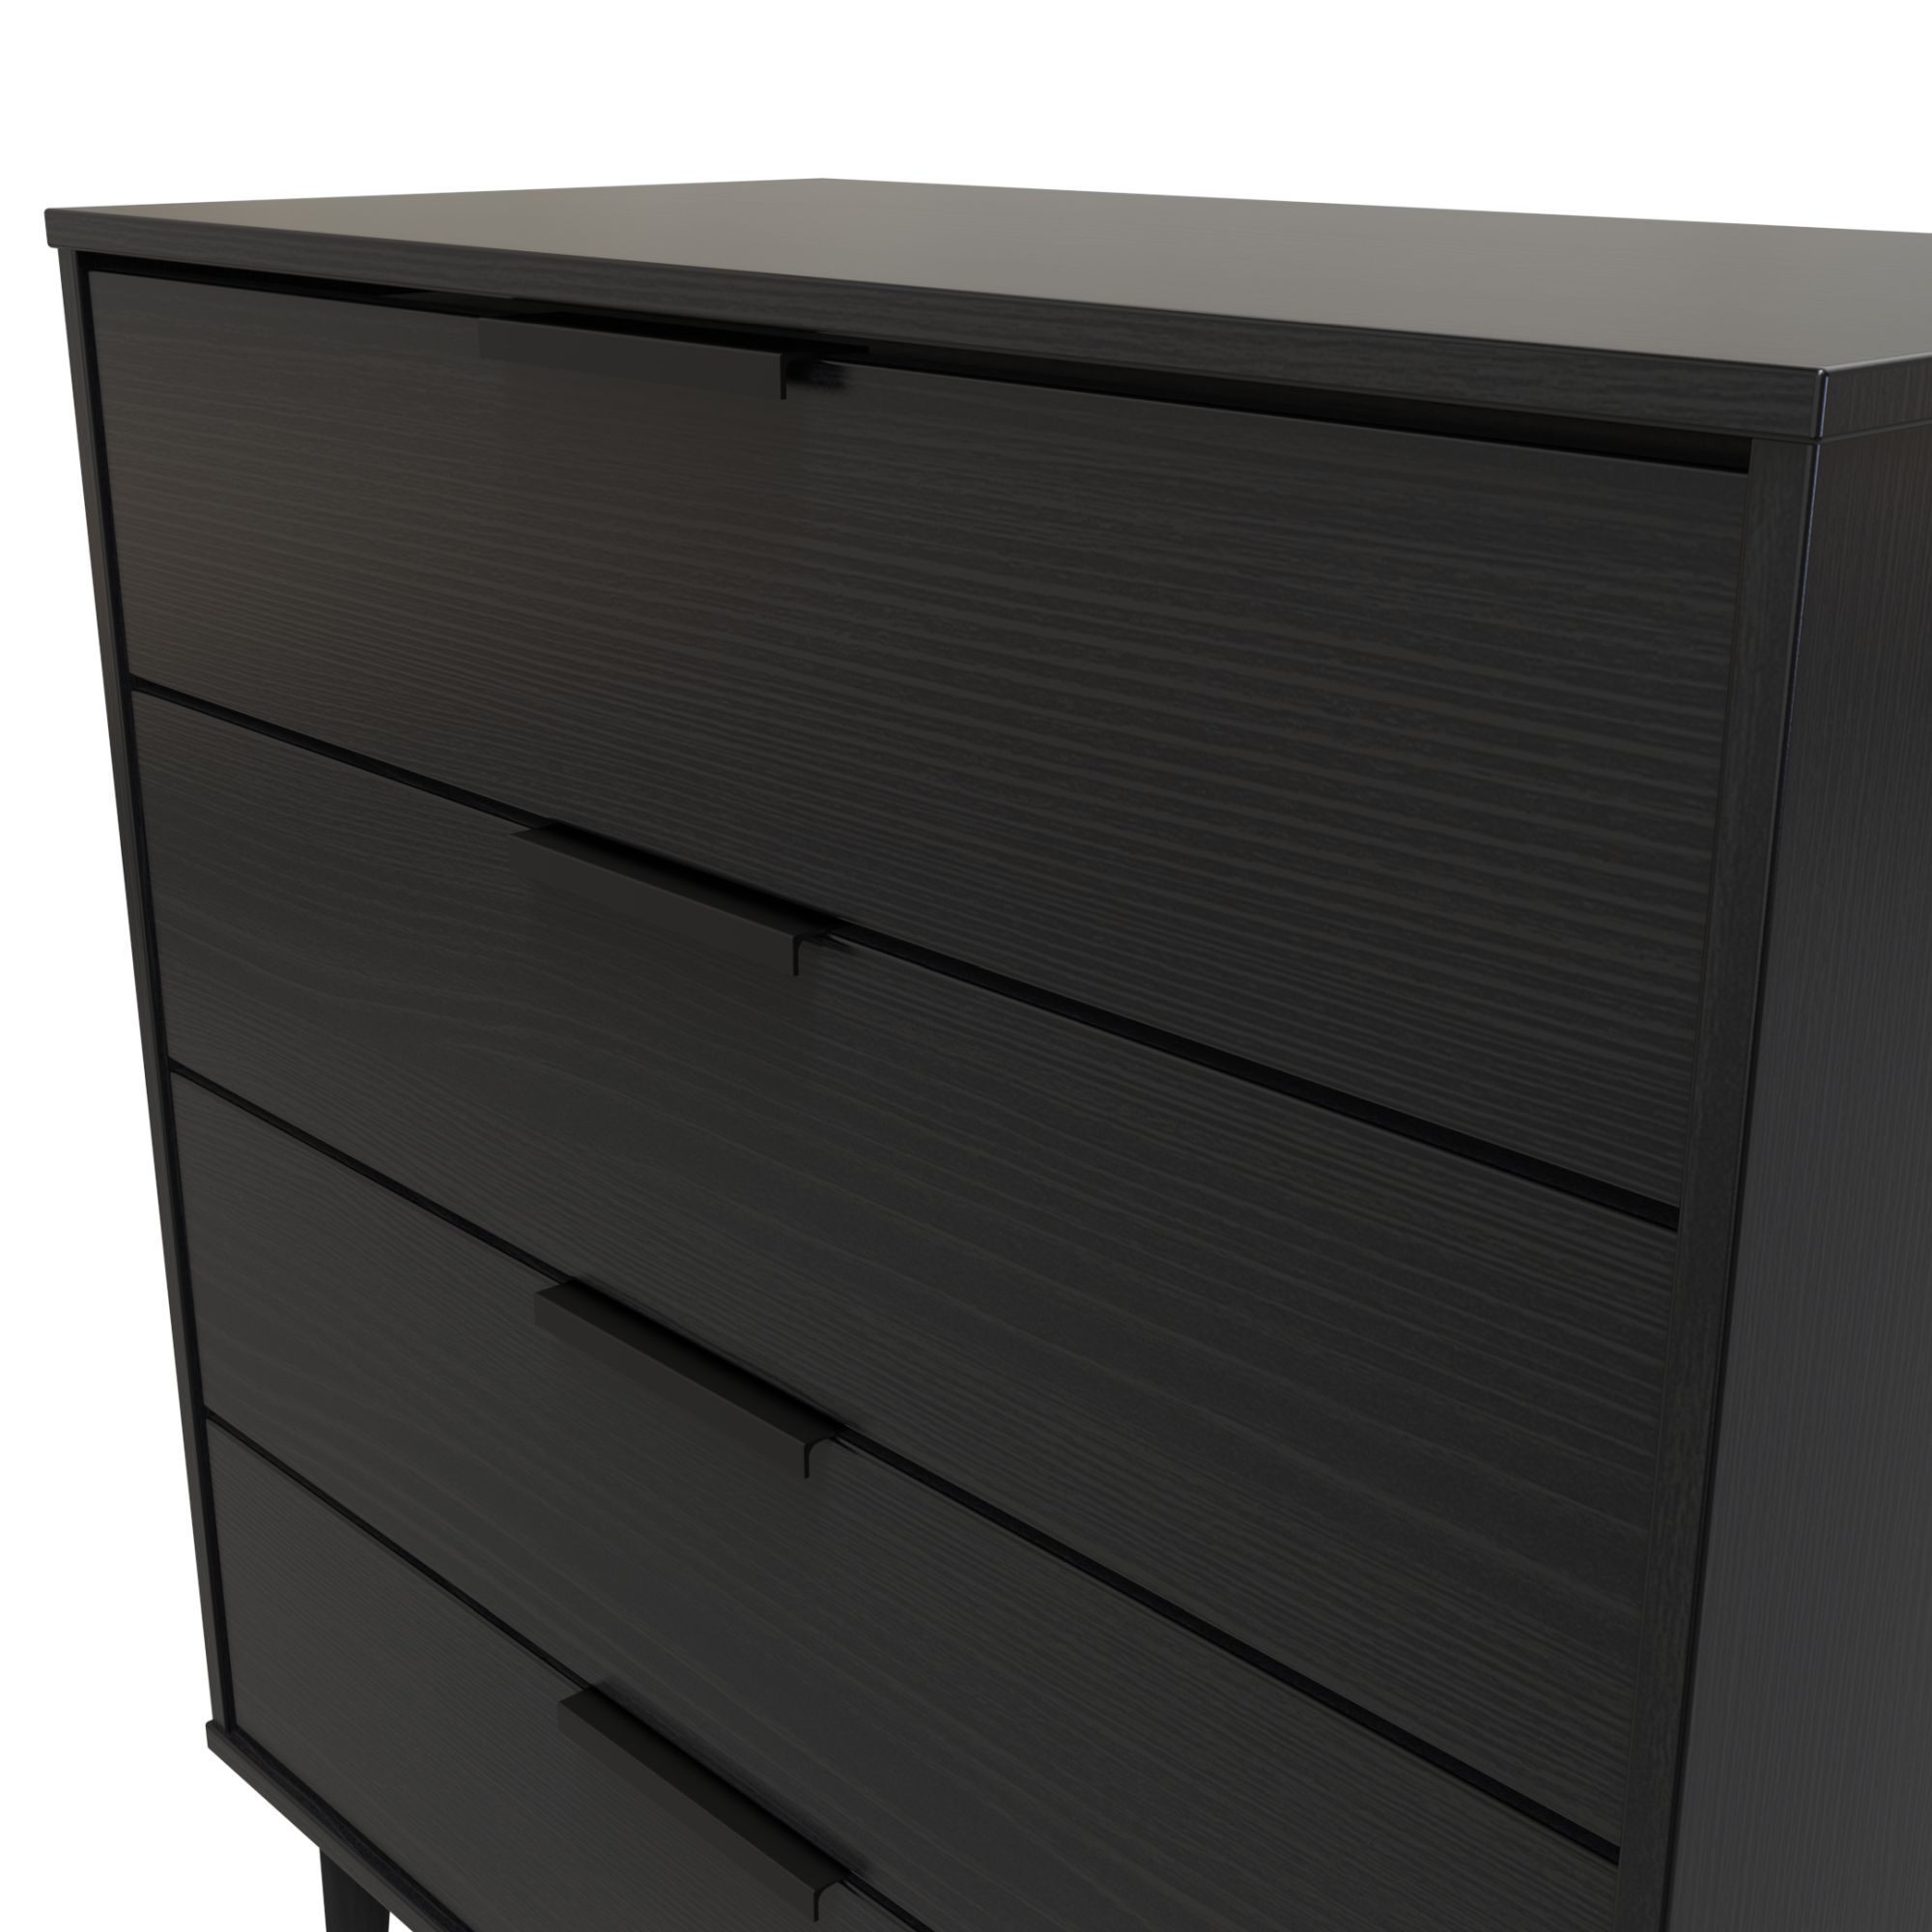 Hong Kong Ready assembled Matt black 4 Drawer Chest of drawers (H)885mm (W)765mm (D)415mm